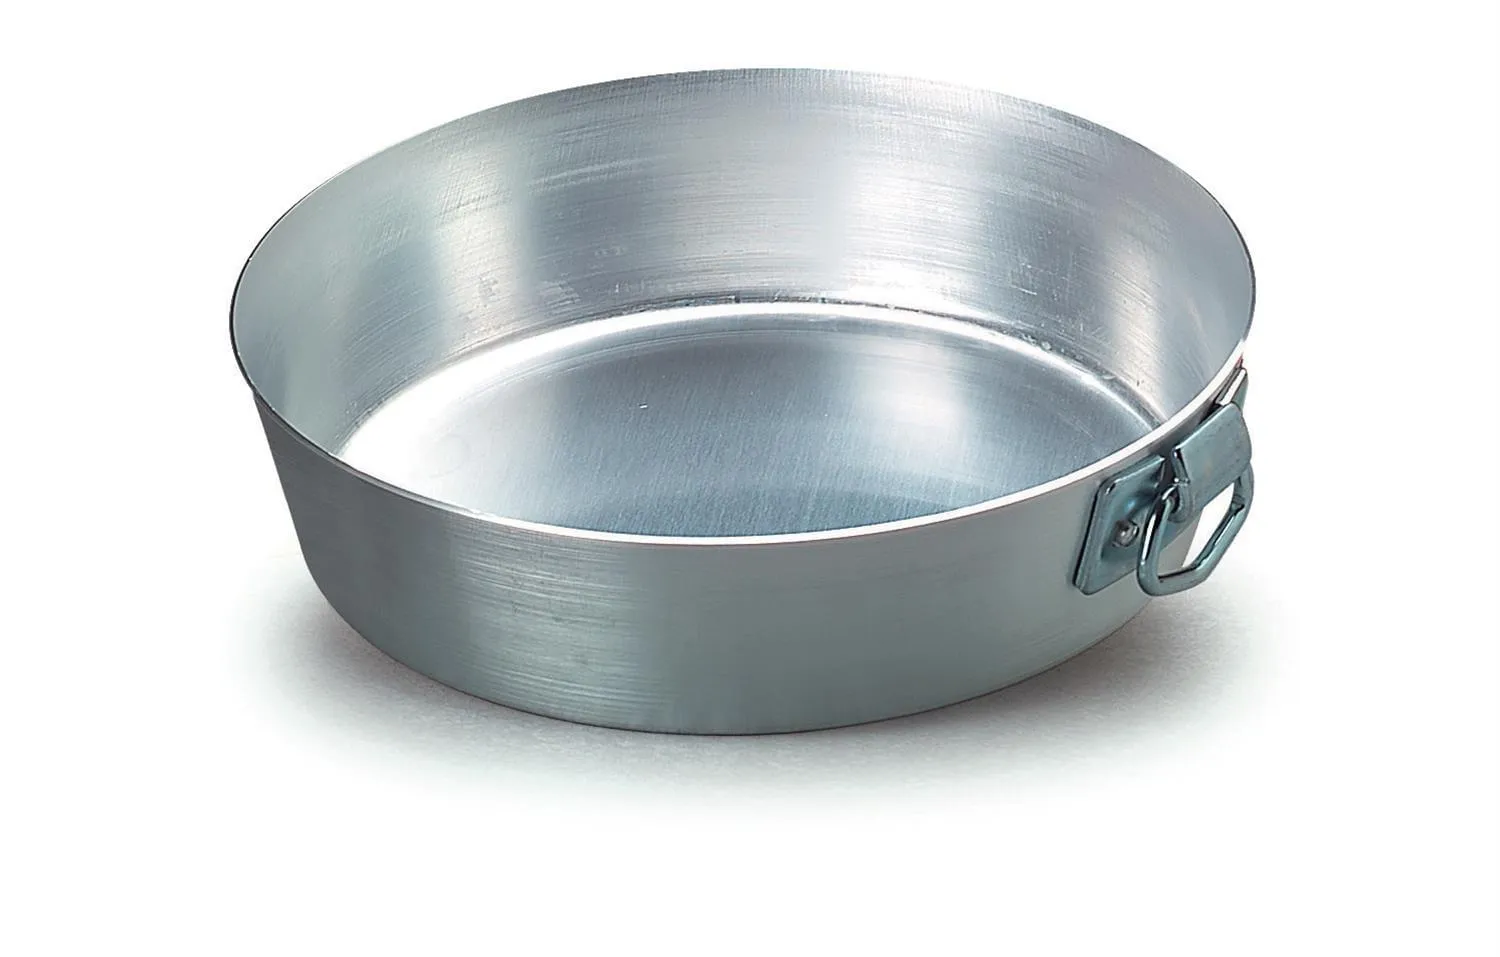 Tortiera conica alta in alluminio con anello in acciaio Inox, diam. 32cm